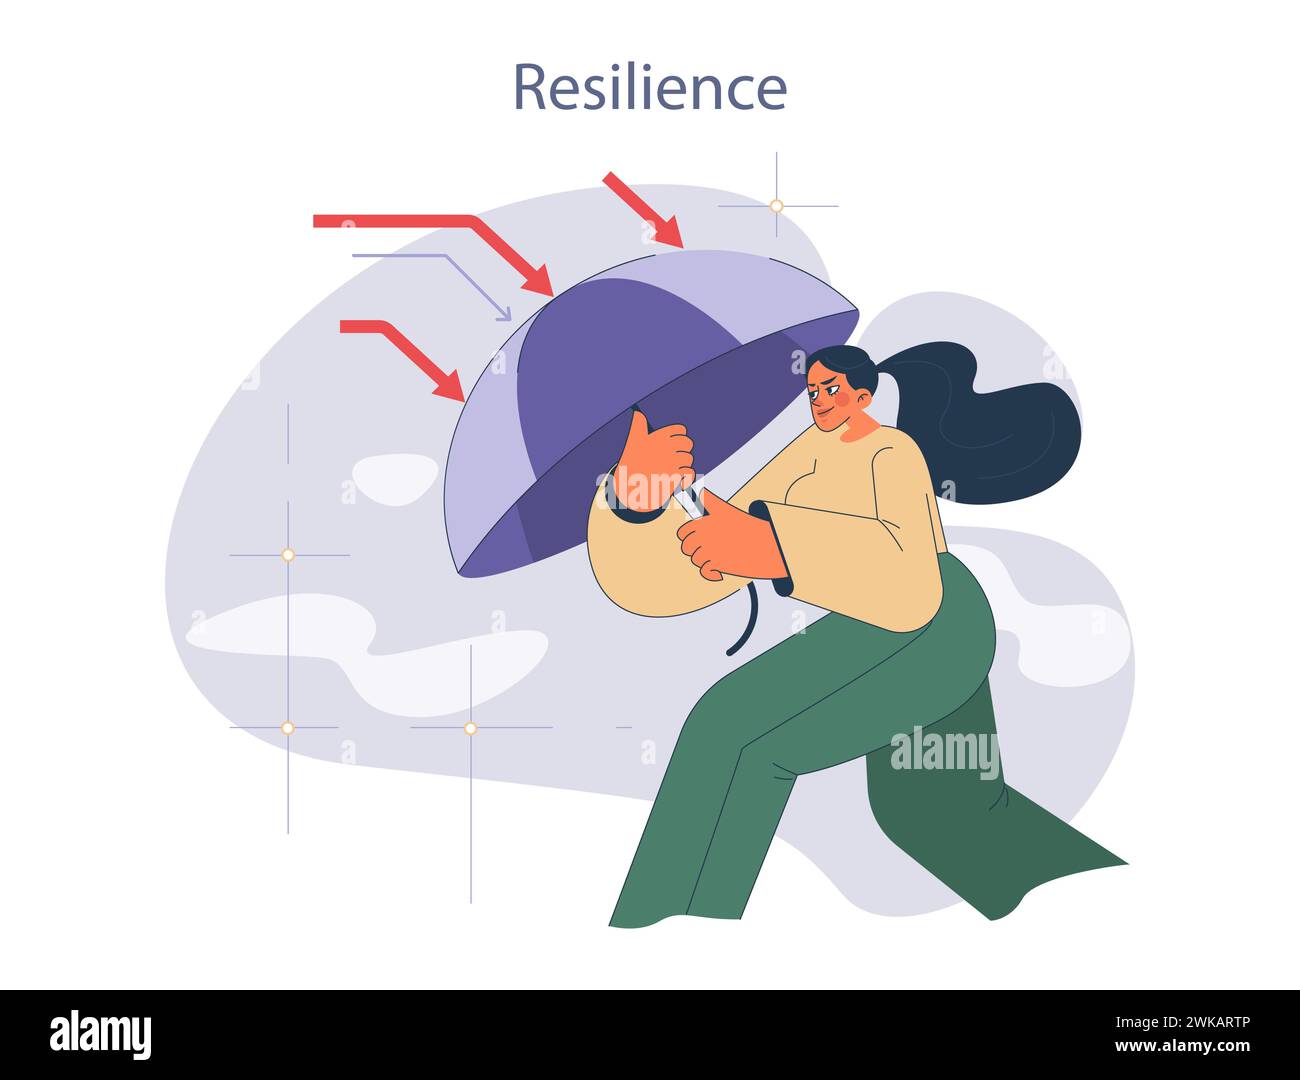 Resilienzkonzept. Herausforderungen mit Kraft und Ausdauer meistern. Mit Entschlossenheit vor Widrigkeiten abschirmen. Stock Vektor